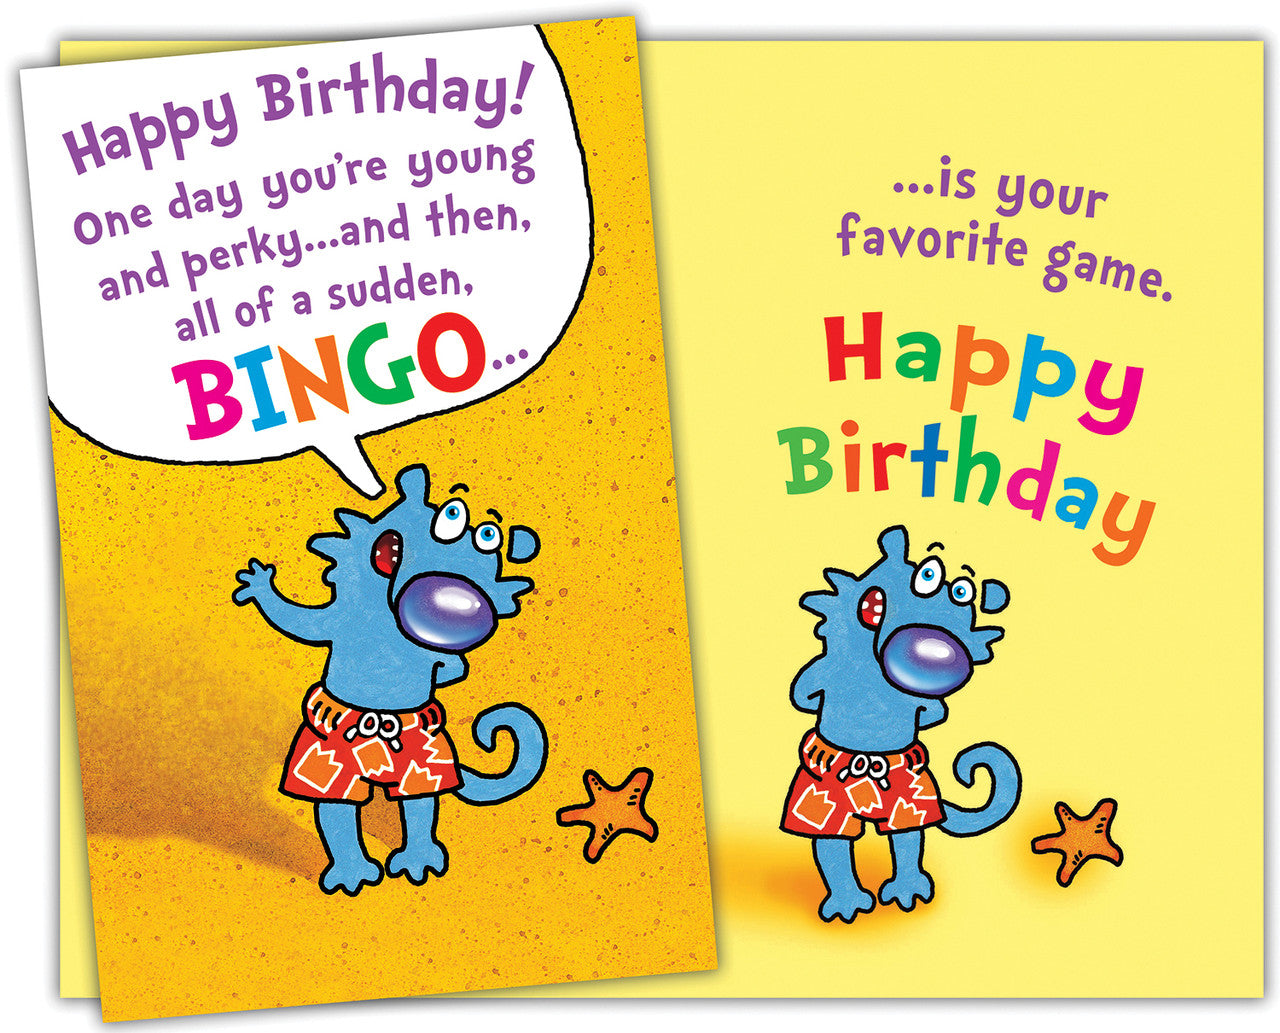 Bingo - Humor Birthday Card